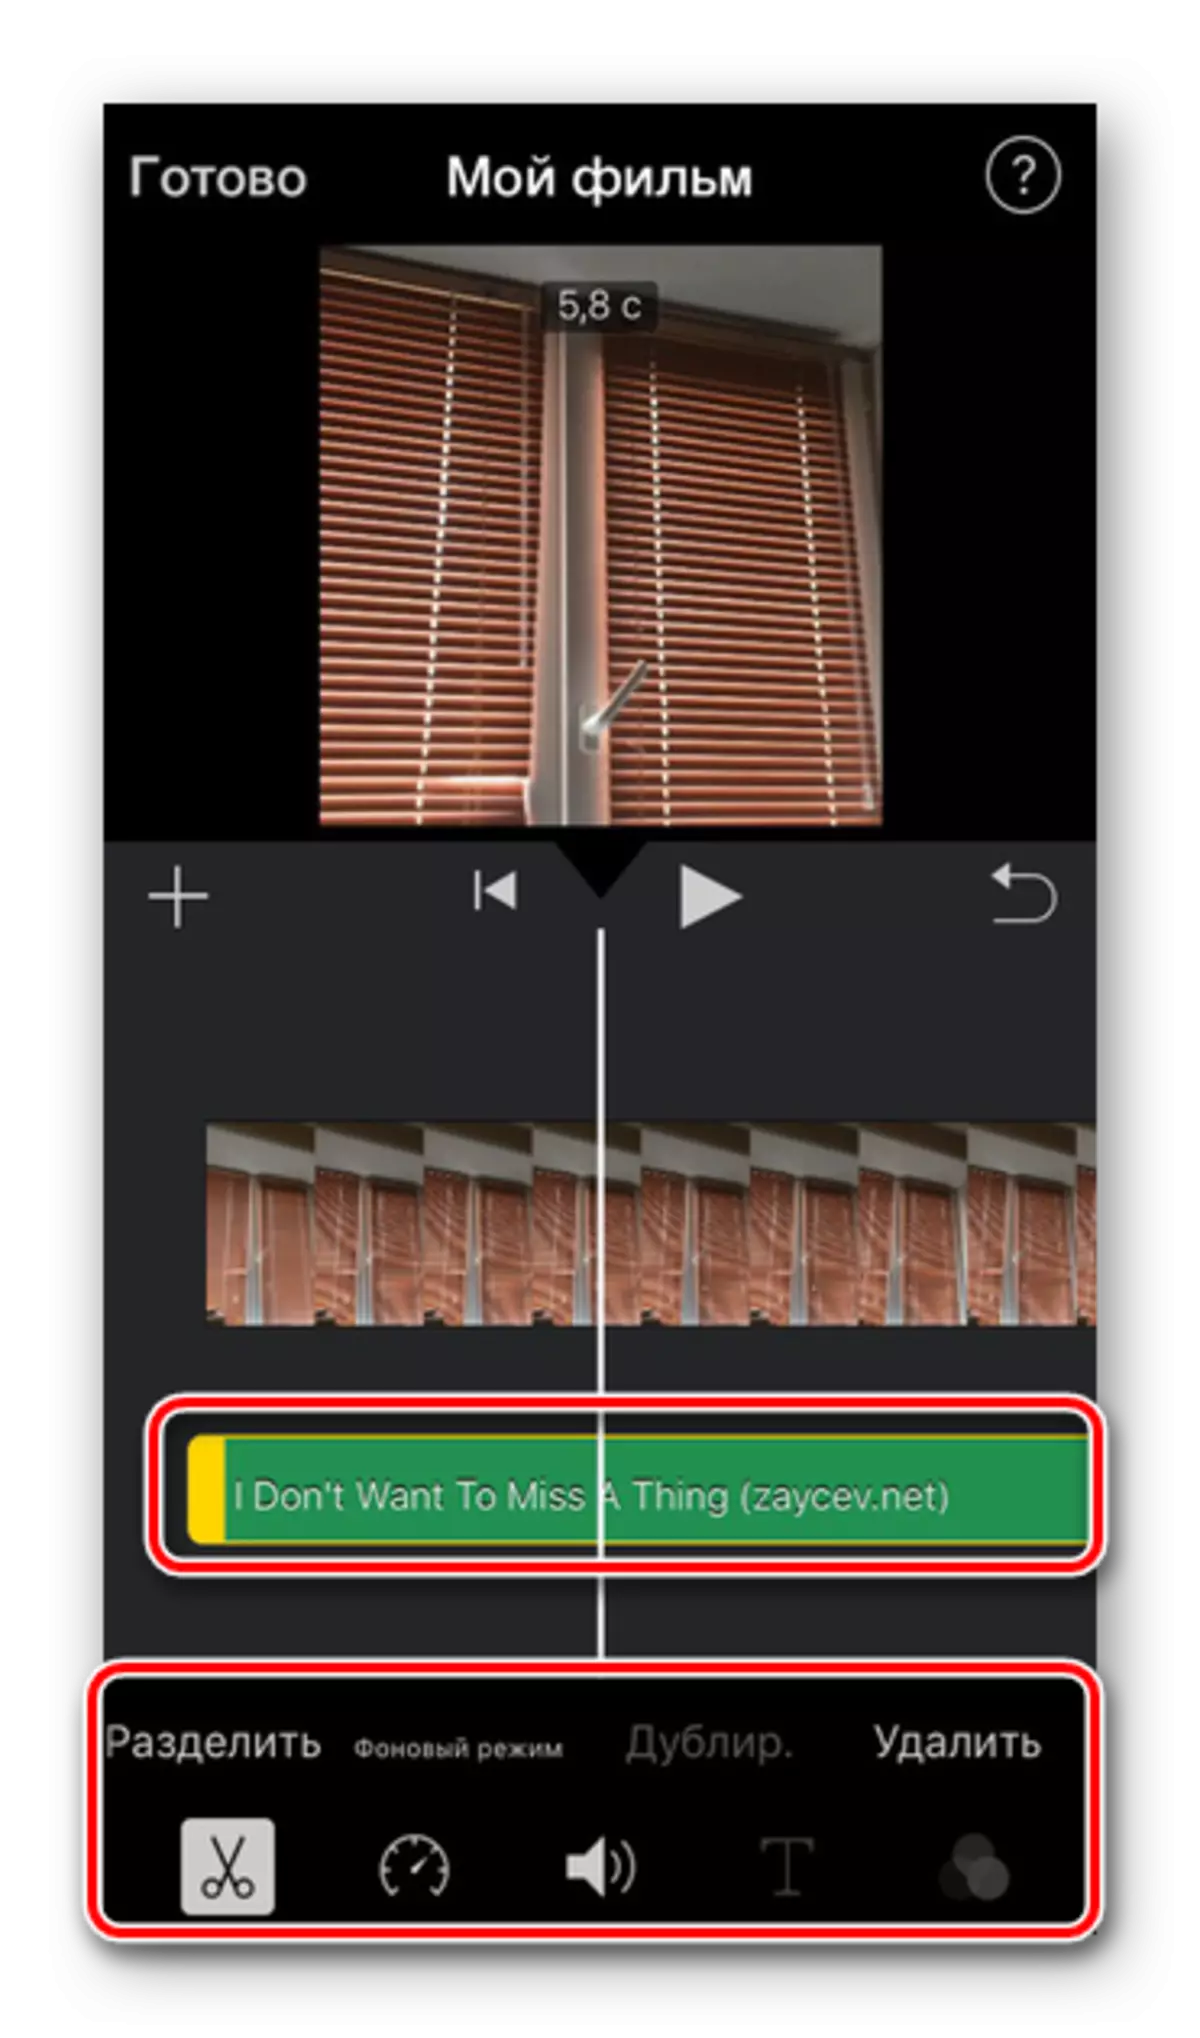 Trek Audio dan Alat Pengeditan dalam aplikasi Imovie pada iPhone